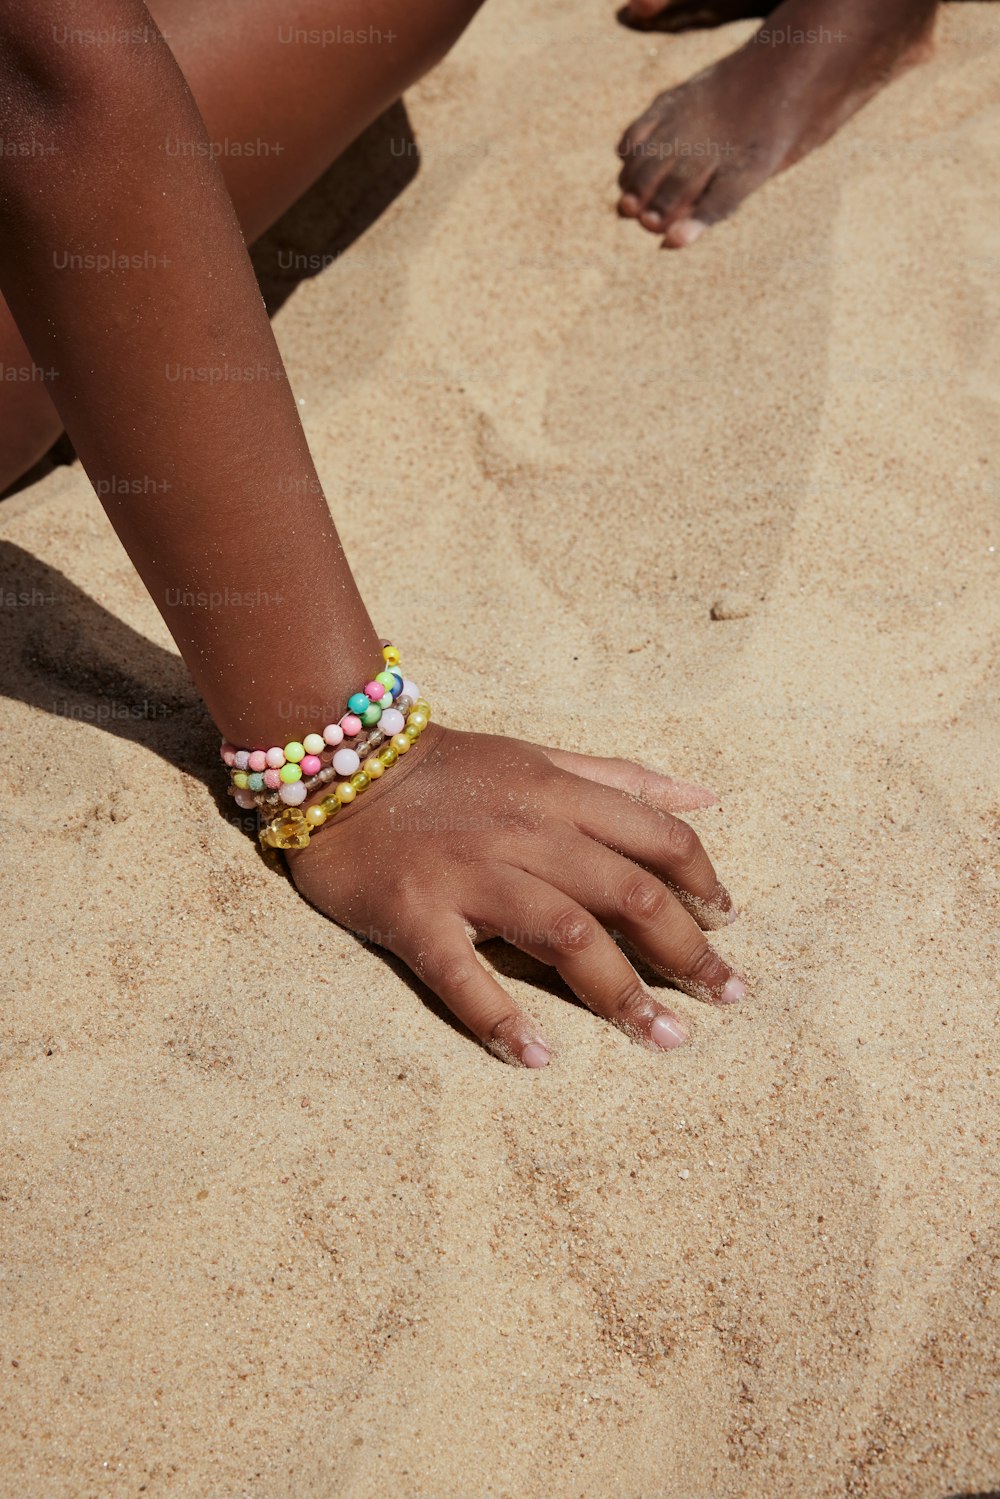 um close up da mão de uma pessoa na areia